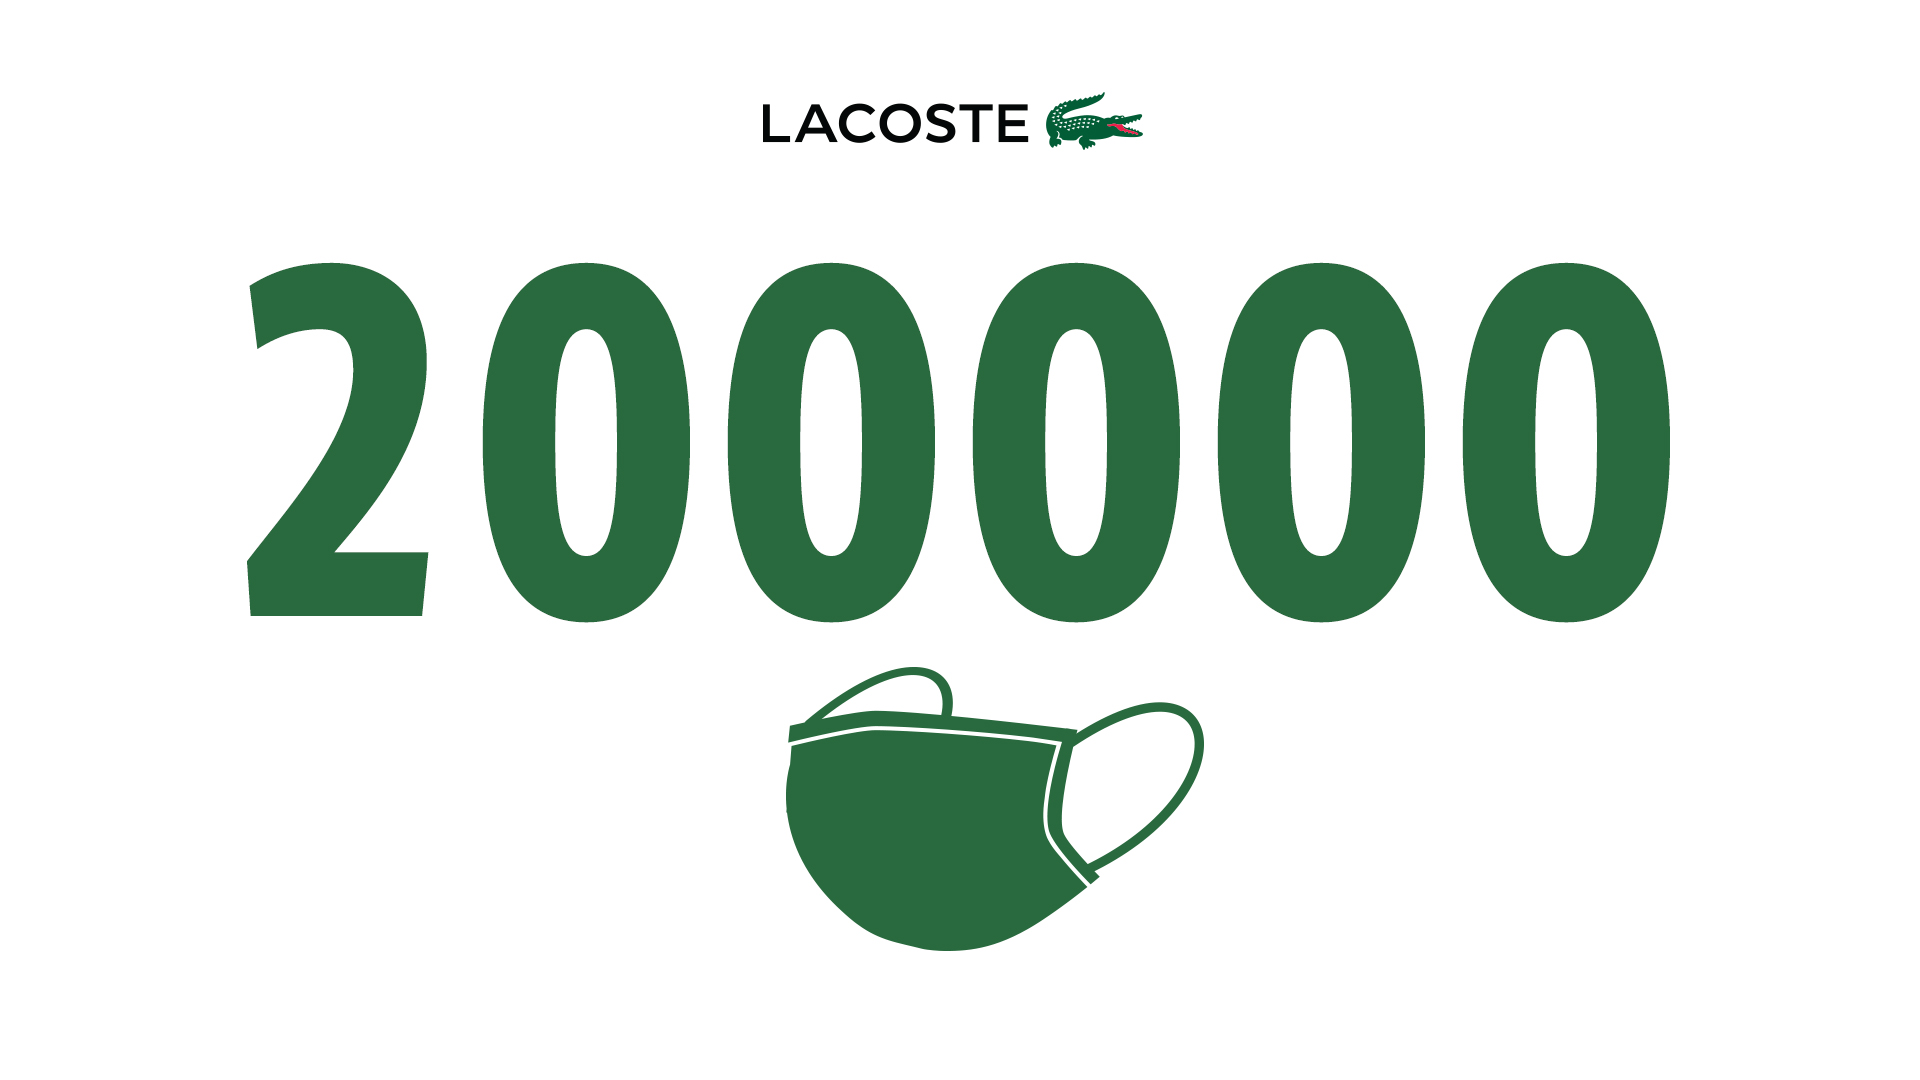 thương hiệu Lacoste đánh dấu cột móc 20000 chiếc khẩu trang